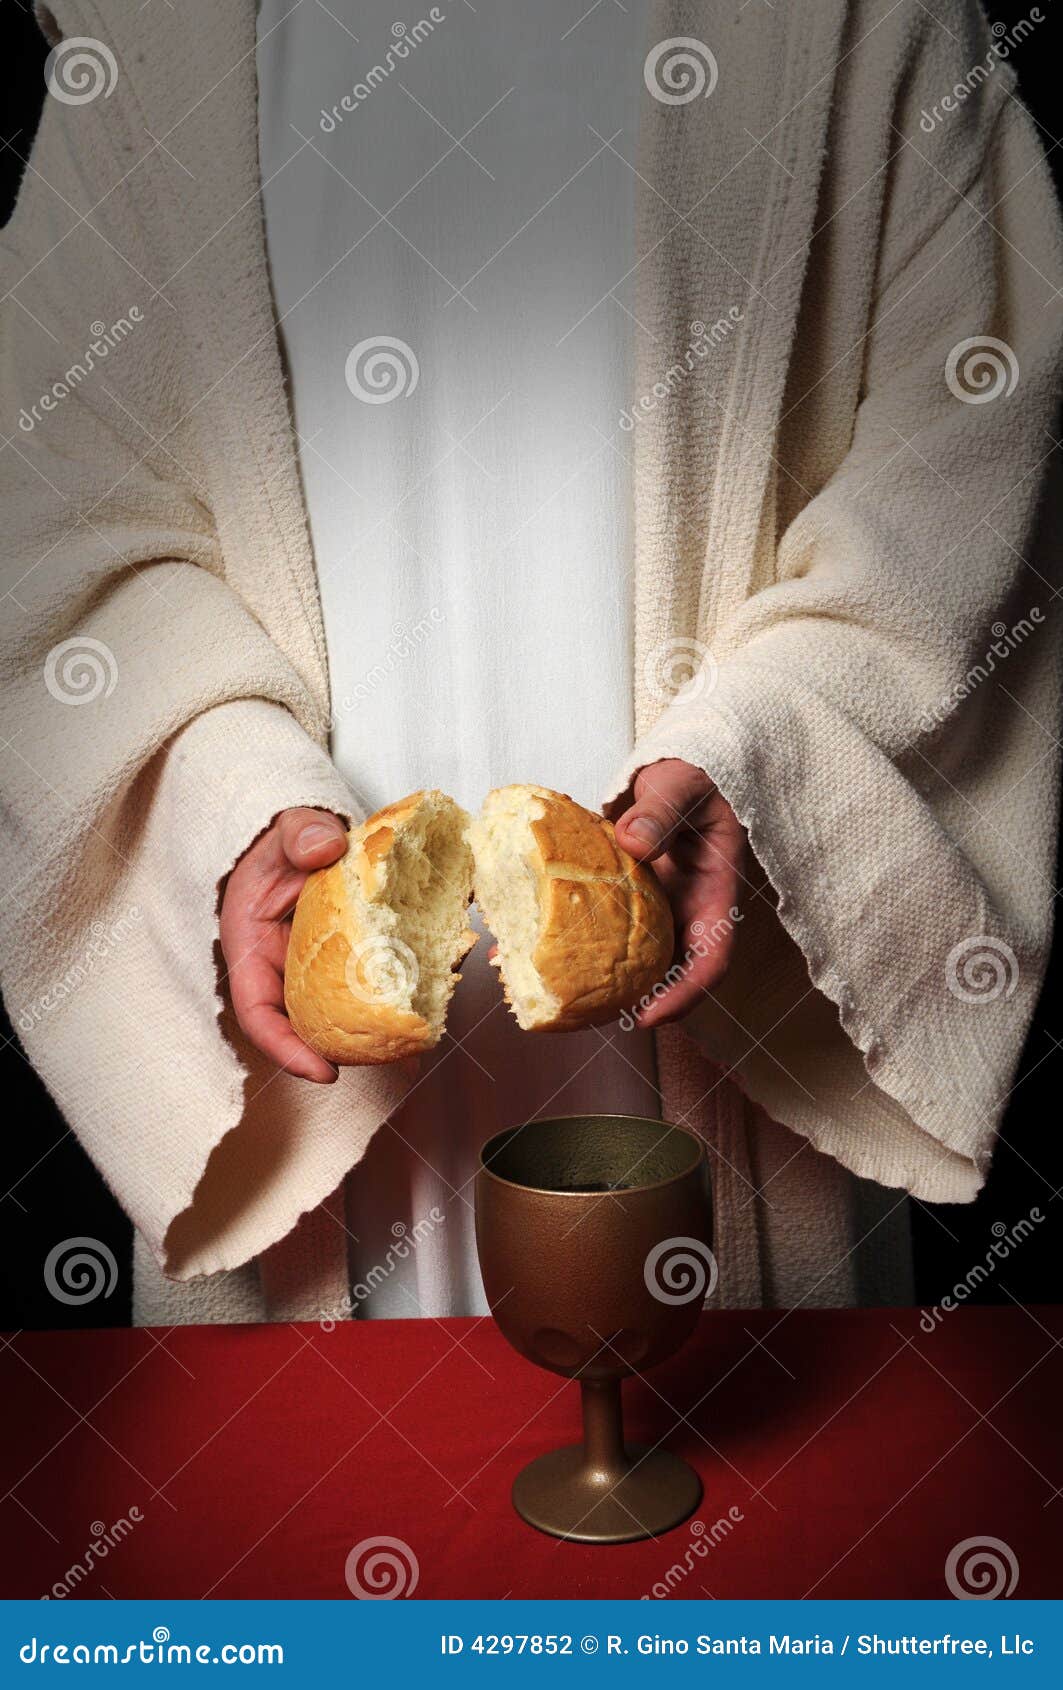 clip art jesus breaking bread - photo #22